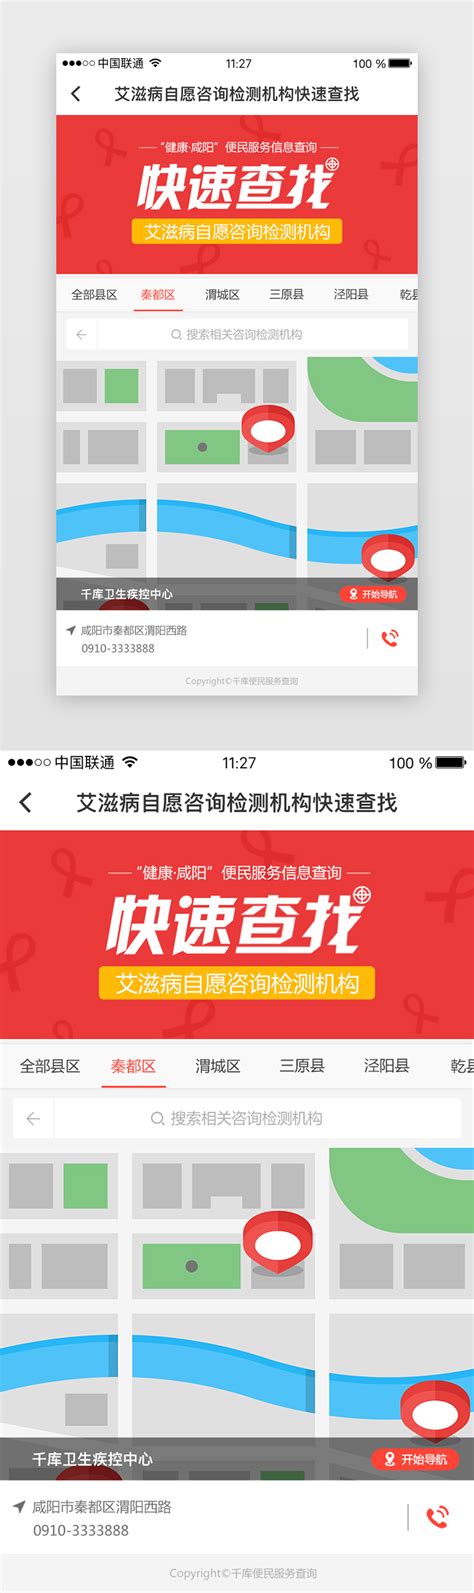 中搜推出地图搜索引擎--郑州大秦信息技术有限公司